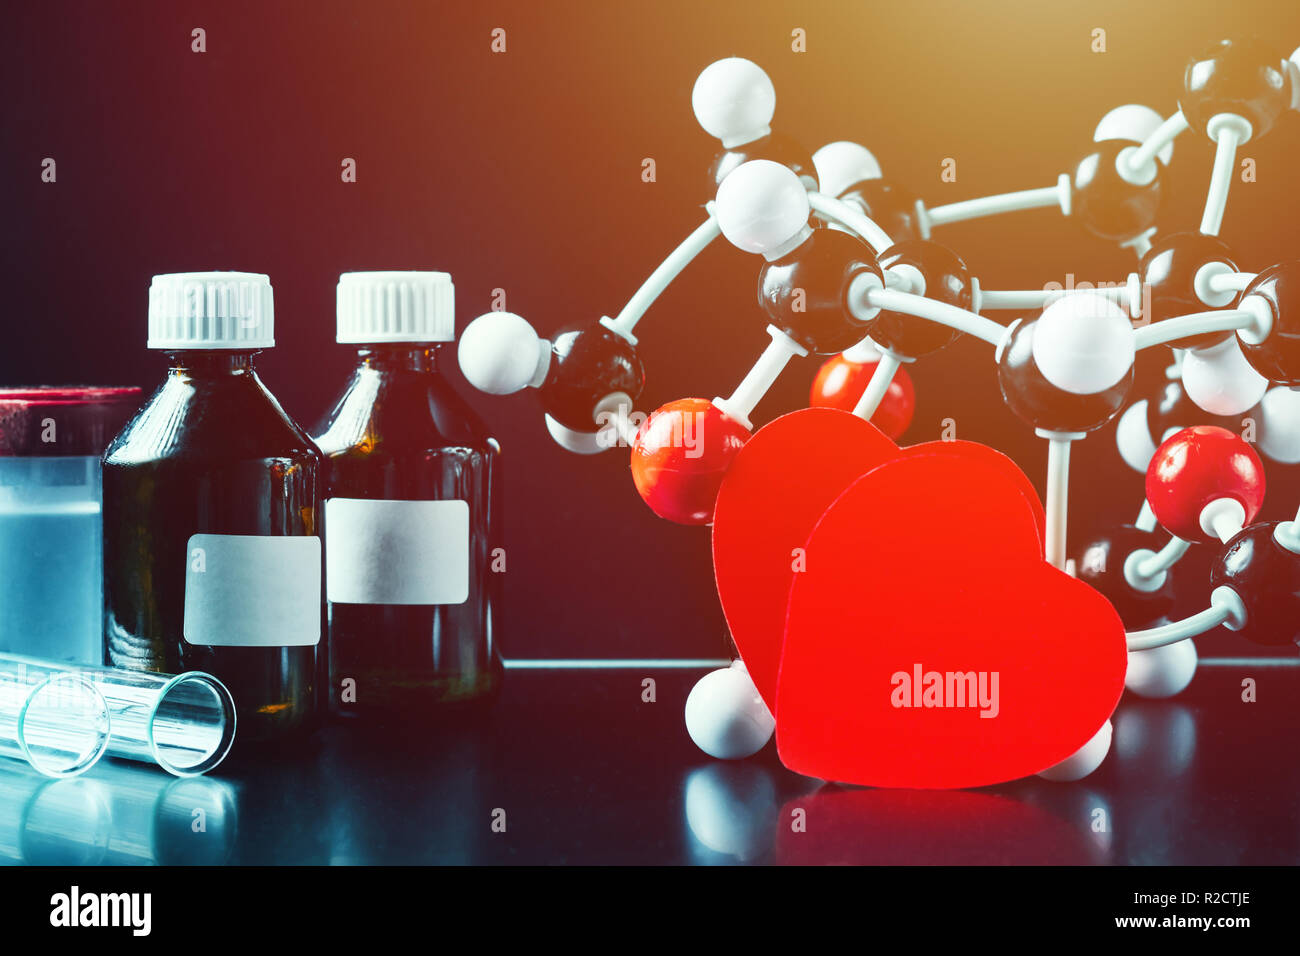 Deux coeurs en papier rouge et la structure moléculaire modèle sur fond noir. Concept de chimie d'amour Banque D'Images